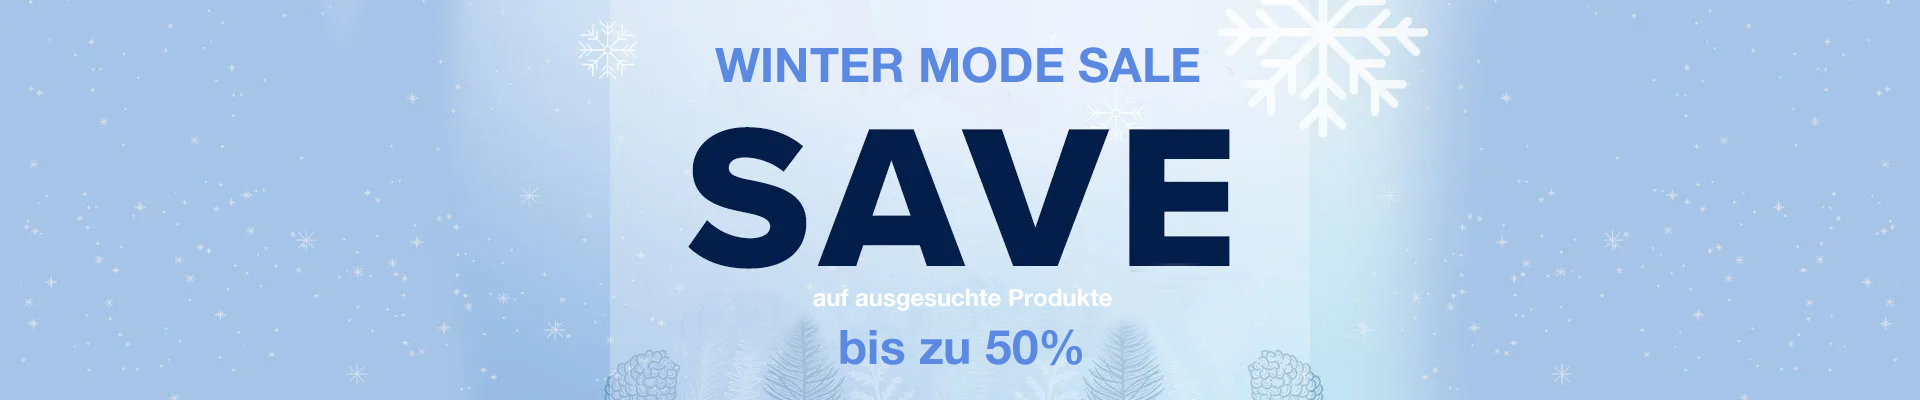 Winter Mode Sale mit viel Komfort - SAVE bis zu 50%